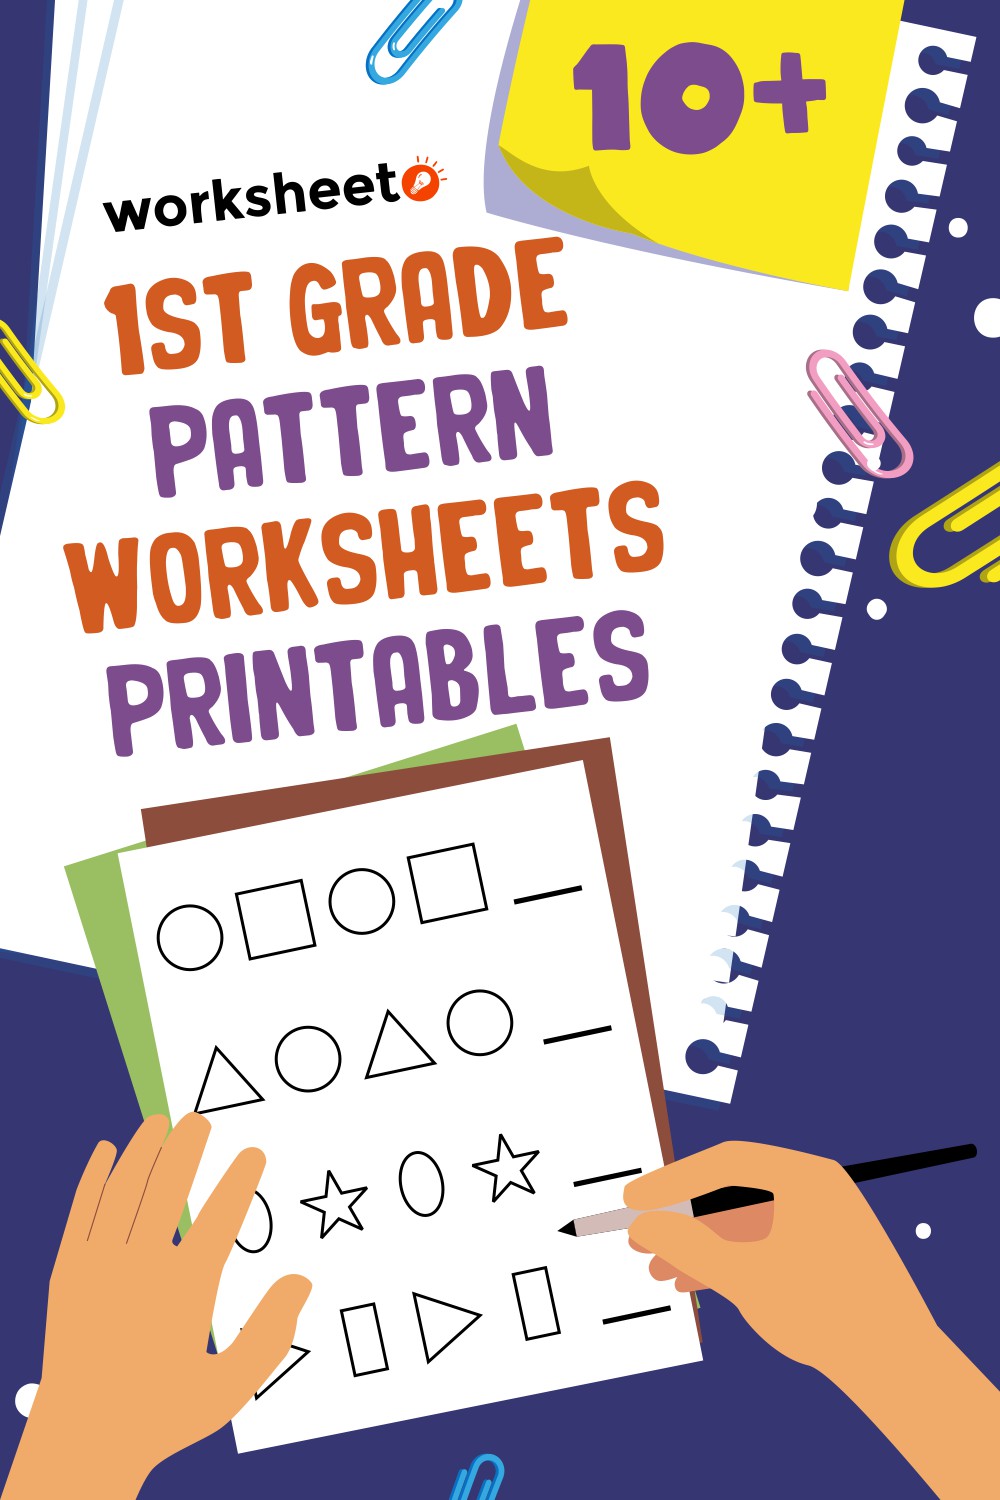 1st Grade Pattern Worksheets Printables